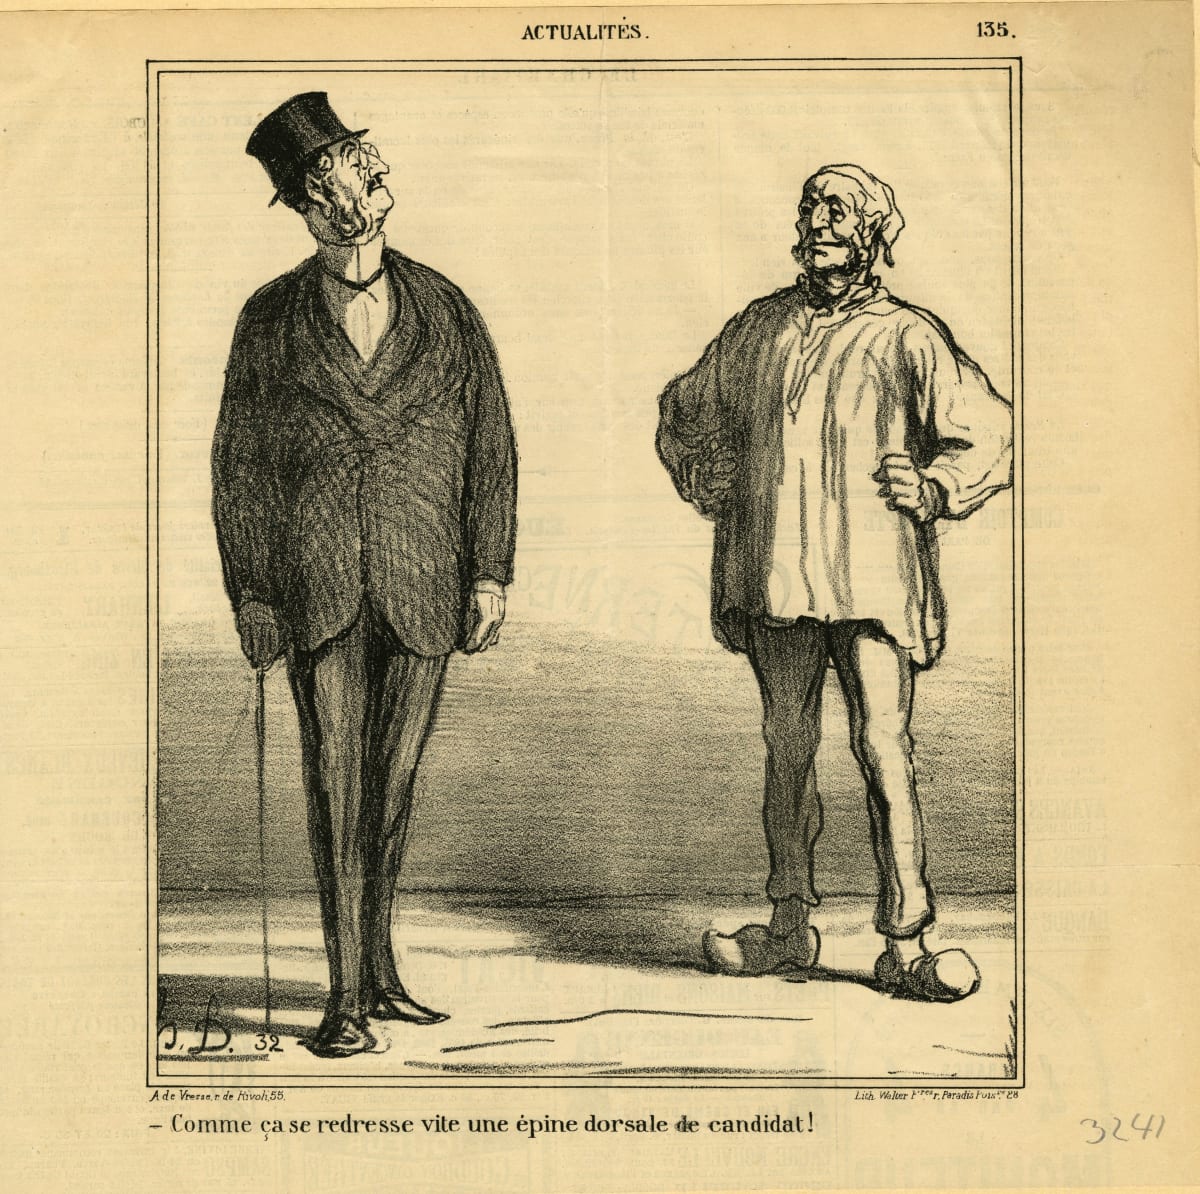 Comme casa redresse vite une épine dorsale de candidat! by Honoré Daumier 